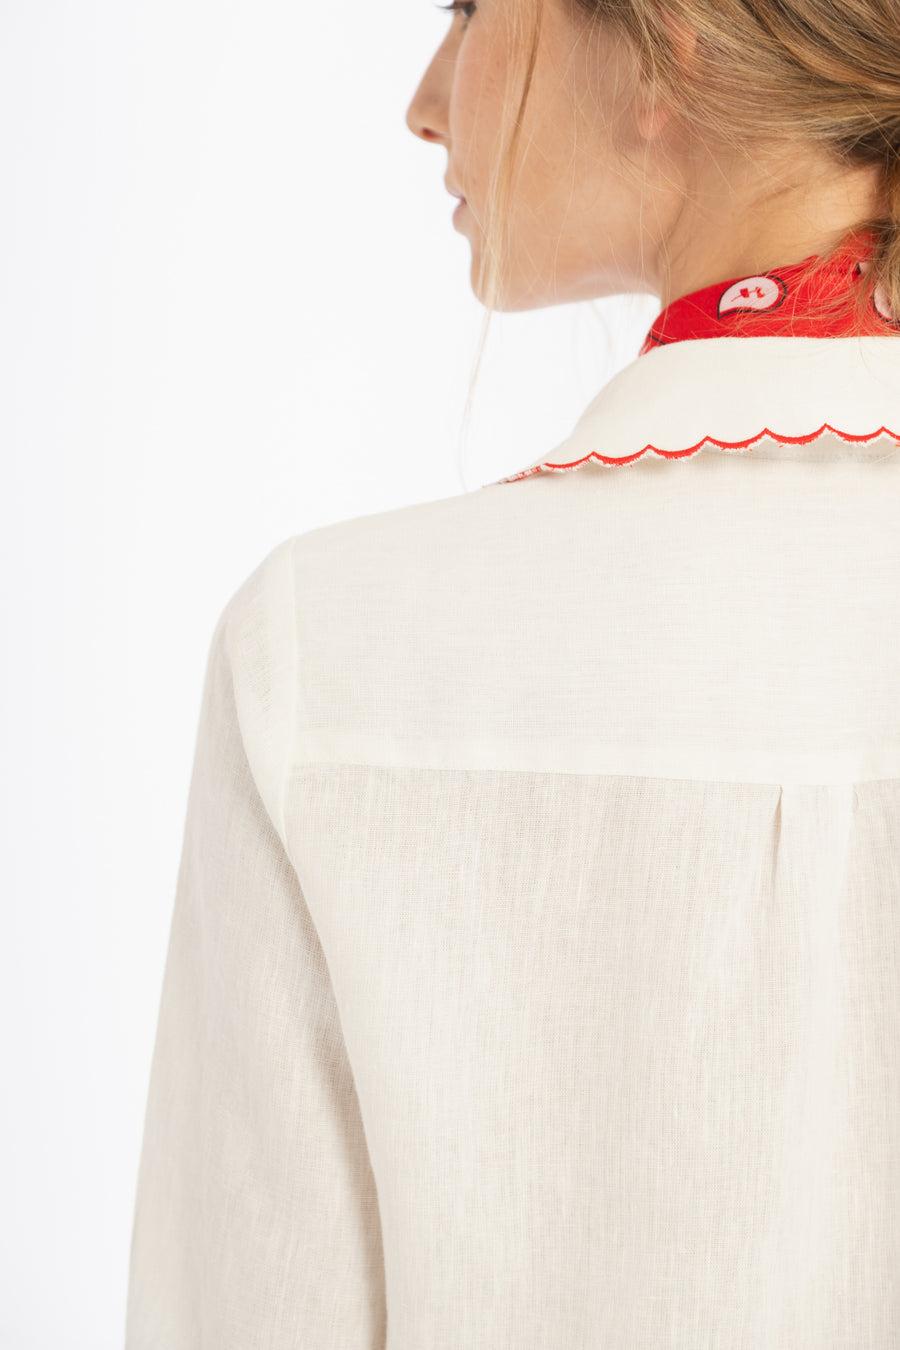 PRE VENTA |  Camisa Don’t Worry en Lino - Blanco con bordados rojos blanco s